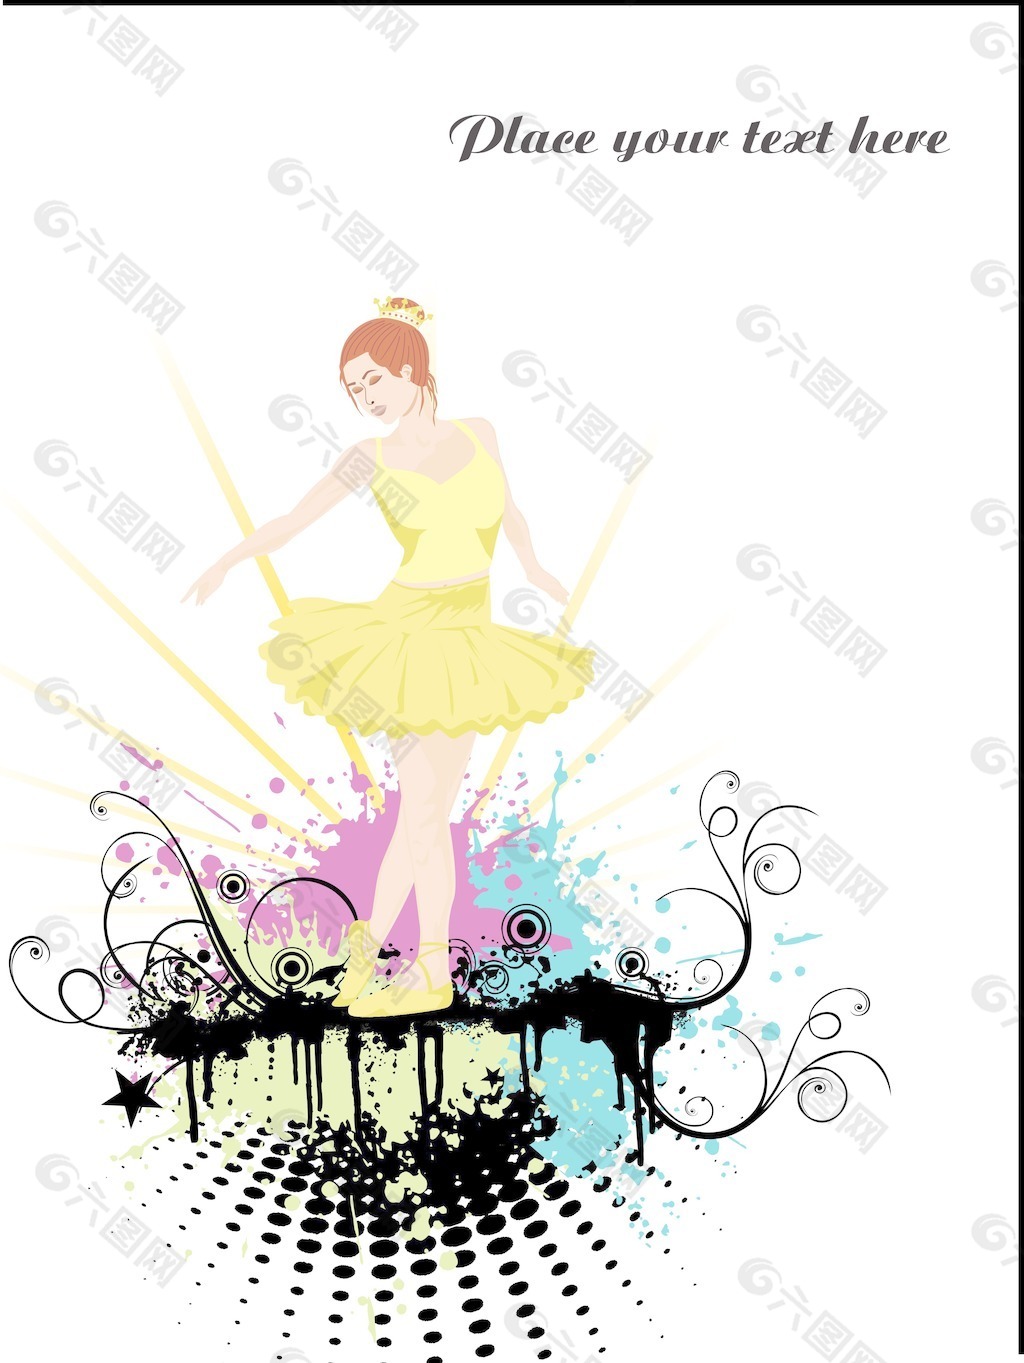 在漂亮的黄色舞蹈服饰的女孩壁纸